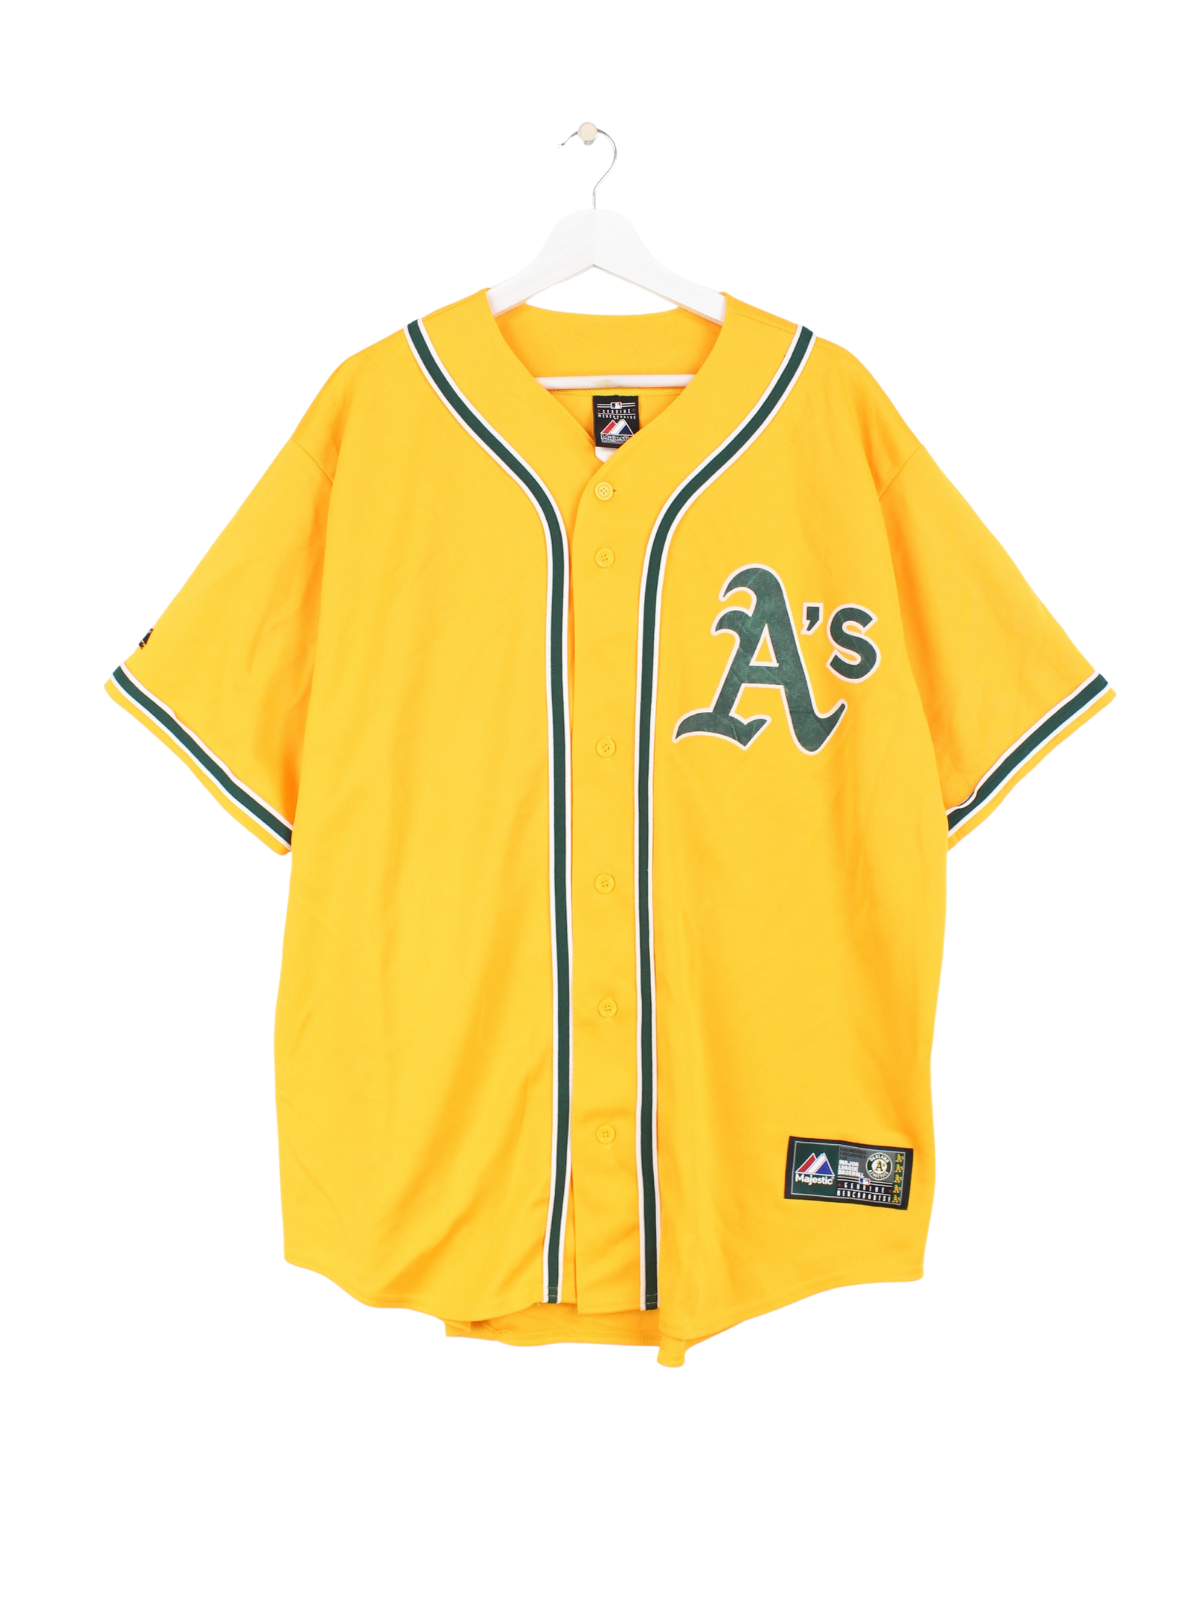 MLB Oakland Athletics Jersey Yellow XL – Peeces